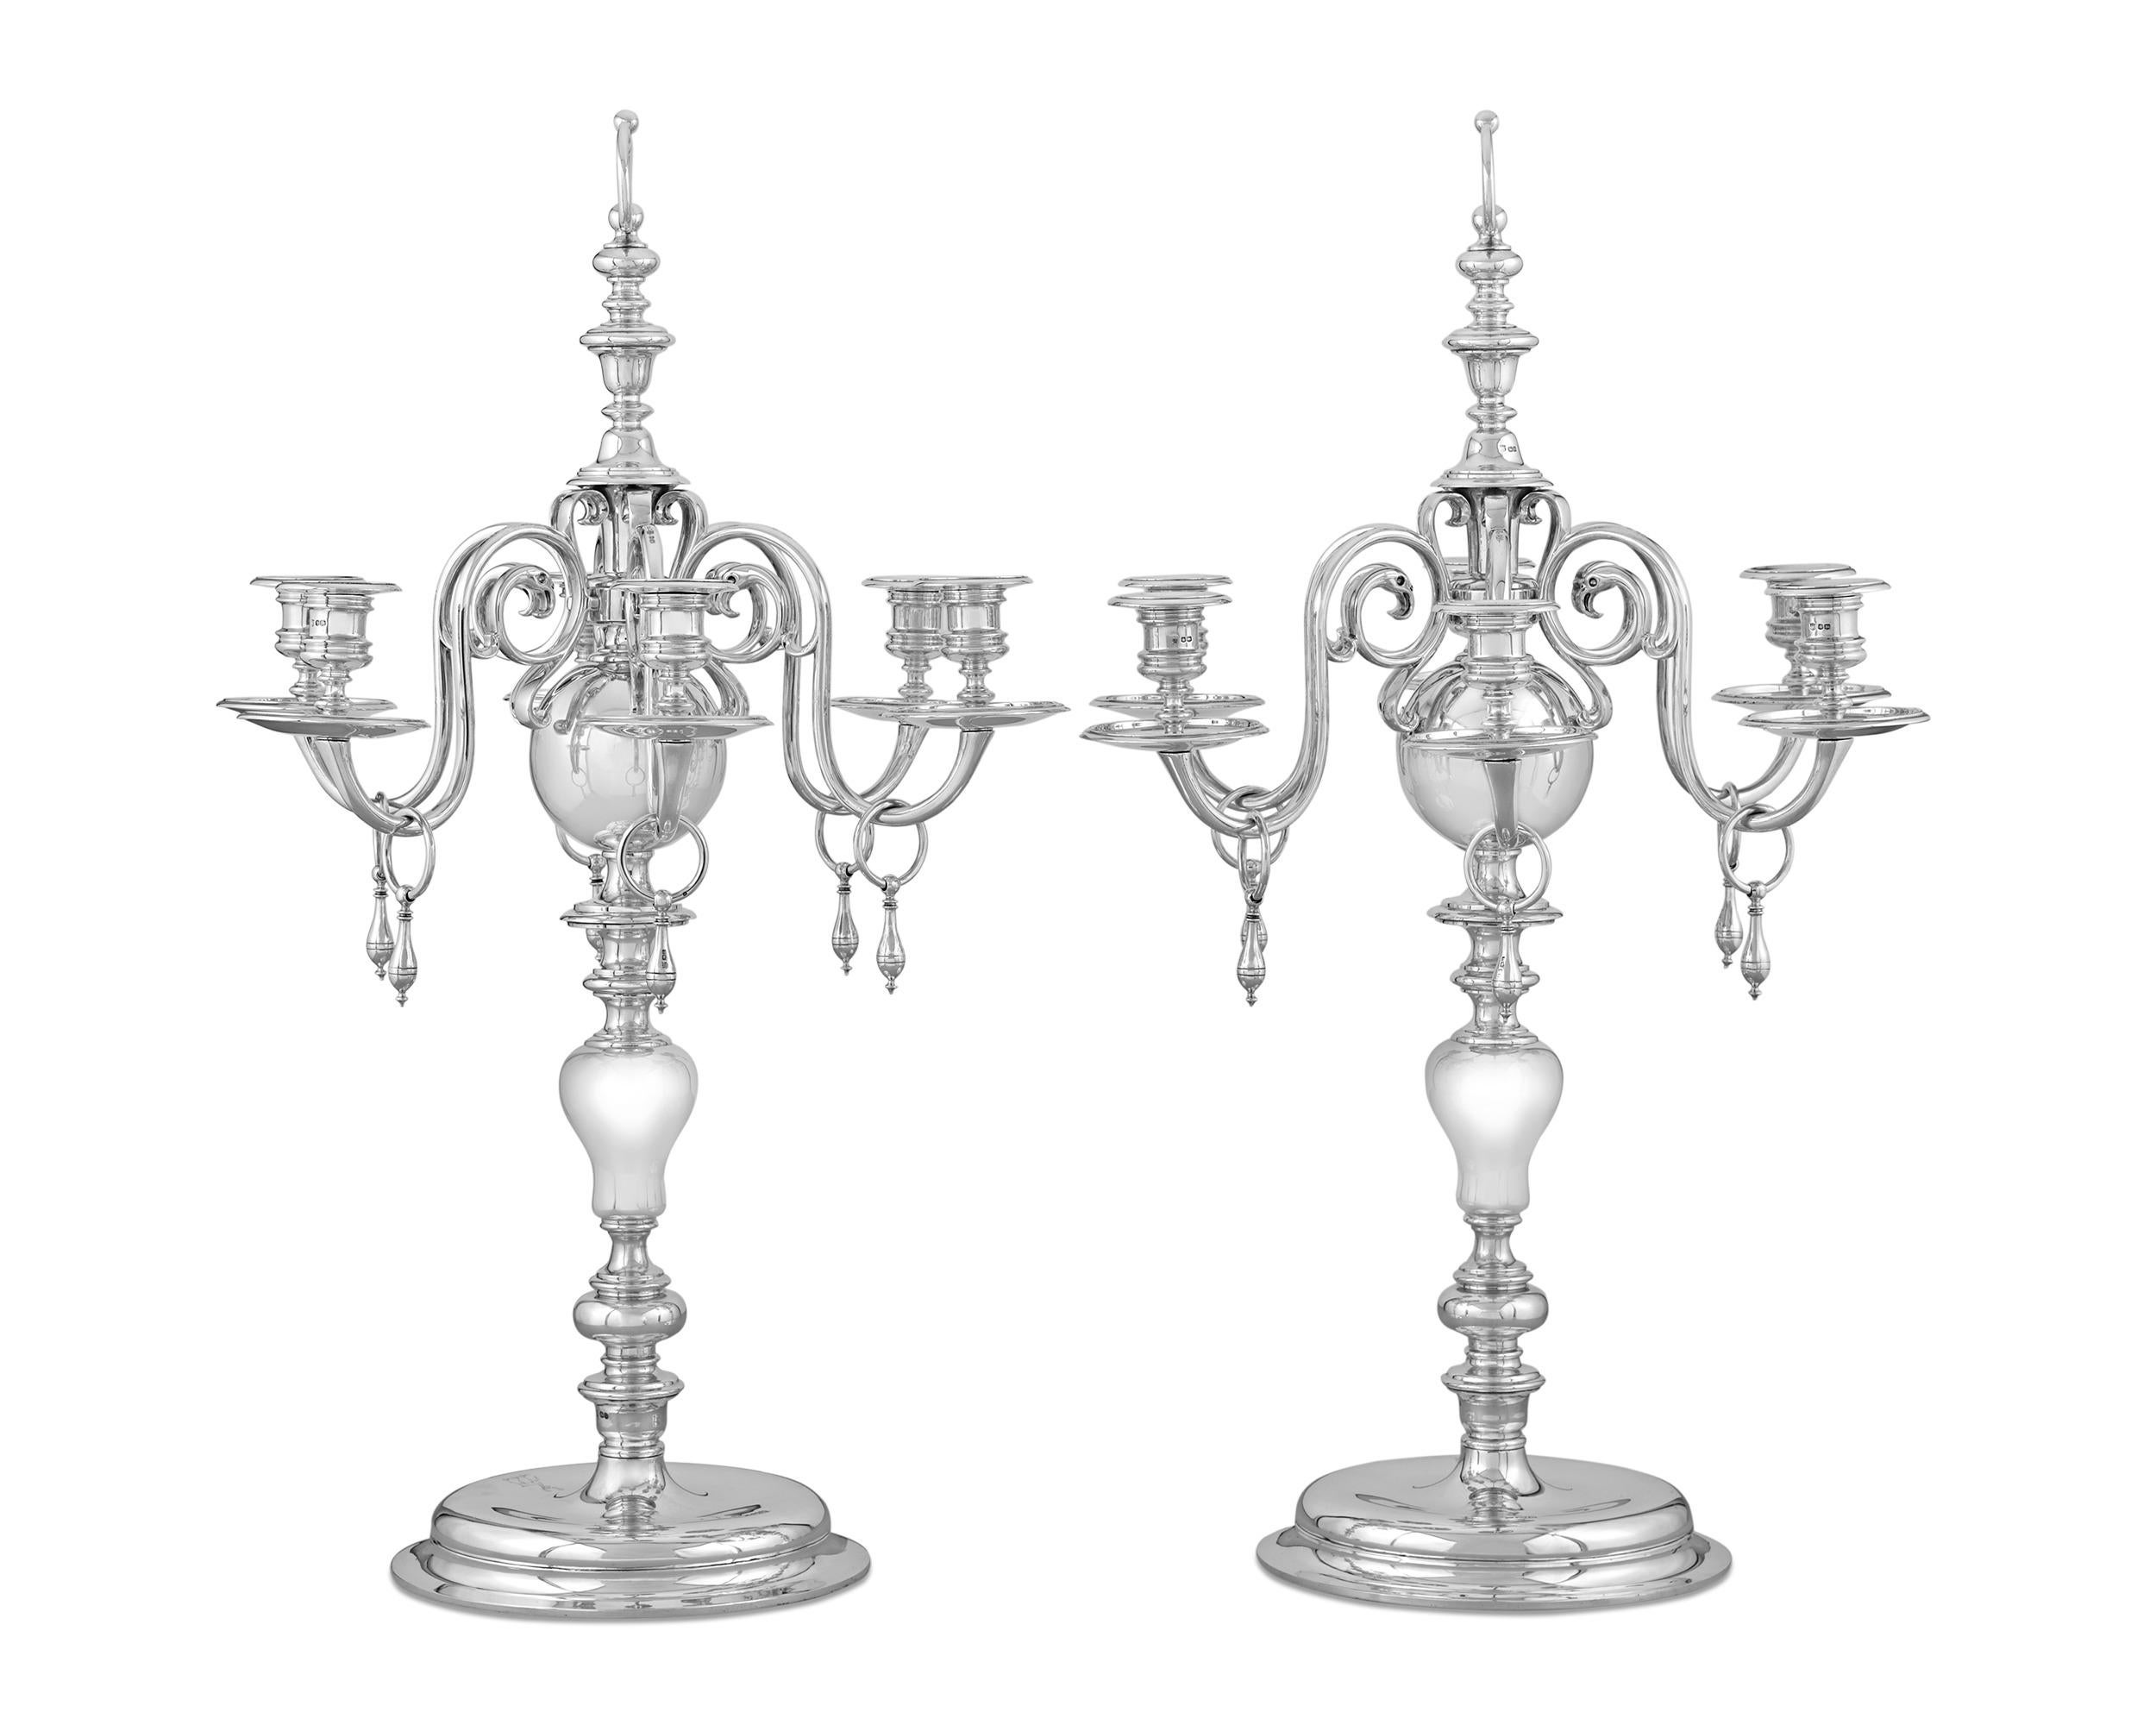 Dieses bedeutende Set von Silberleuchtern unter George V. von der berühmten englischen Silberschmiede Thomas Bradbury & Sons gehört zu den besten, die das Unternehmen je geschaffen hat. Dieses gewichtige Design-Light mit sechs Lichtern zeichnet sich